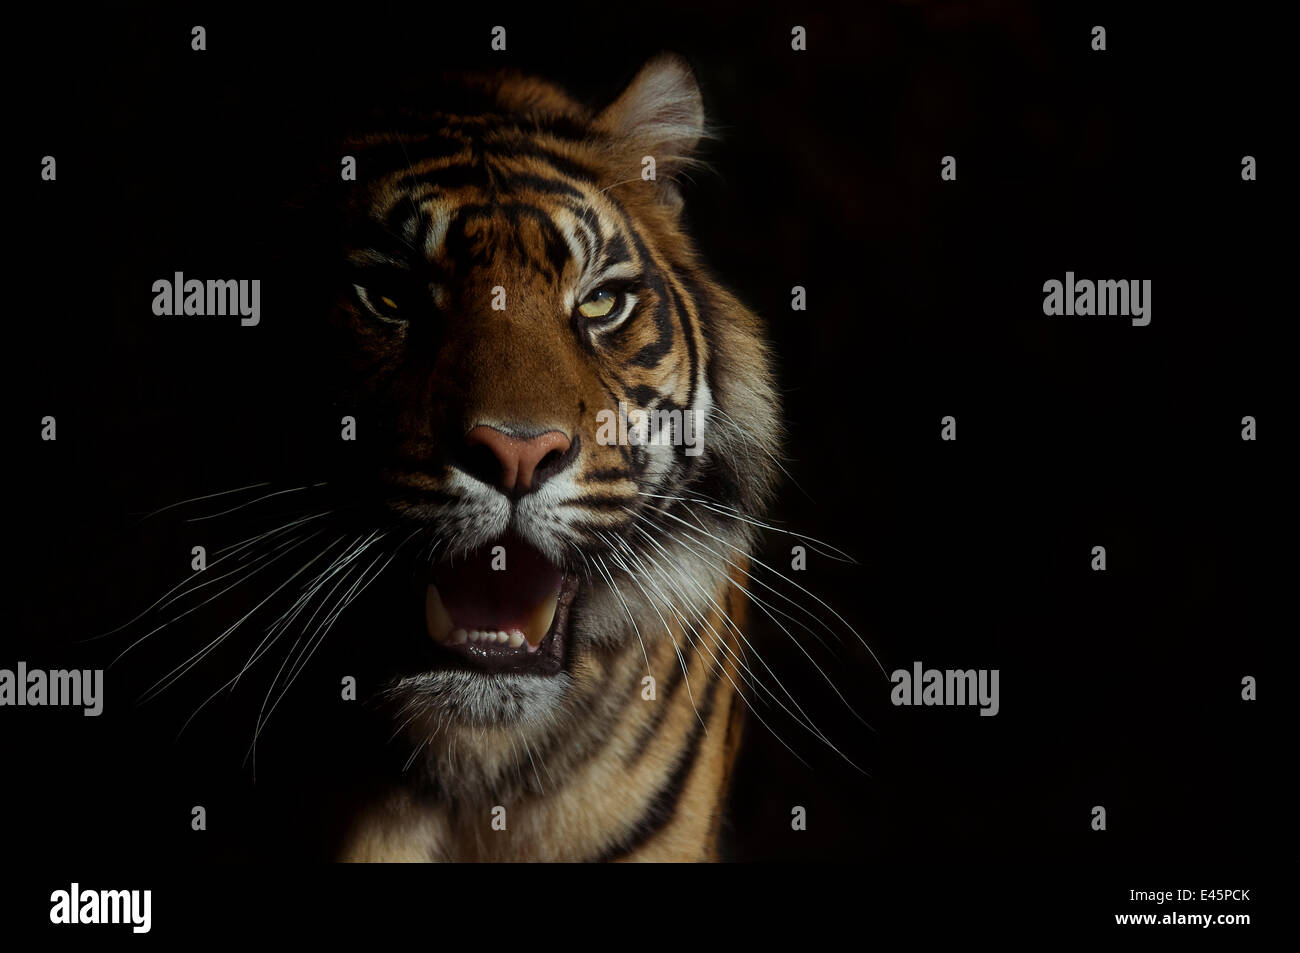 Ritratto di testa della tigre di Sumatra (Panthera tigris sumatrae) con la faccia metà cast in ombra, con espressione aggressiva, captive Foto Stock